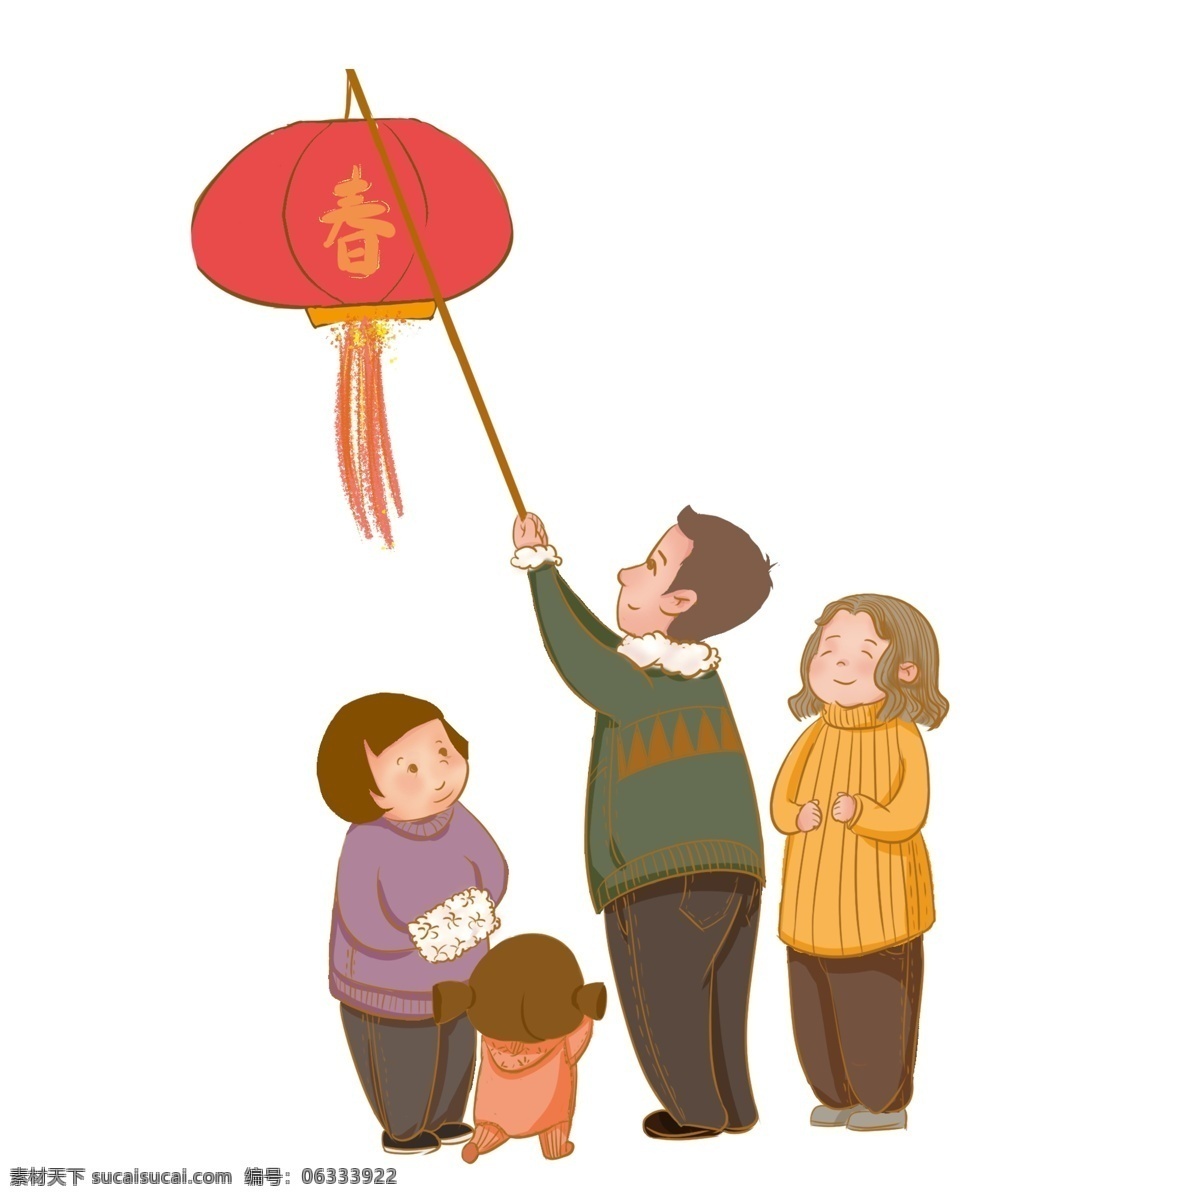 春节 一家人 挂 灯笼 挂红灯笼 男女老少 传统节日 喜气 喜气洋洋 小孩 老人 夫妻